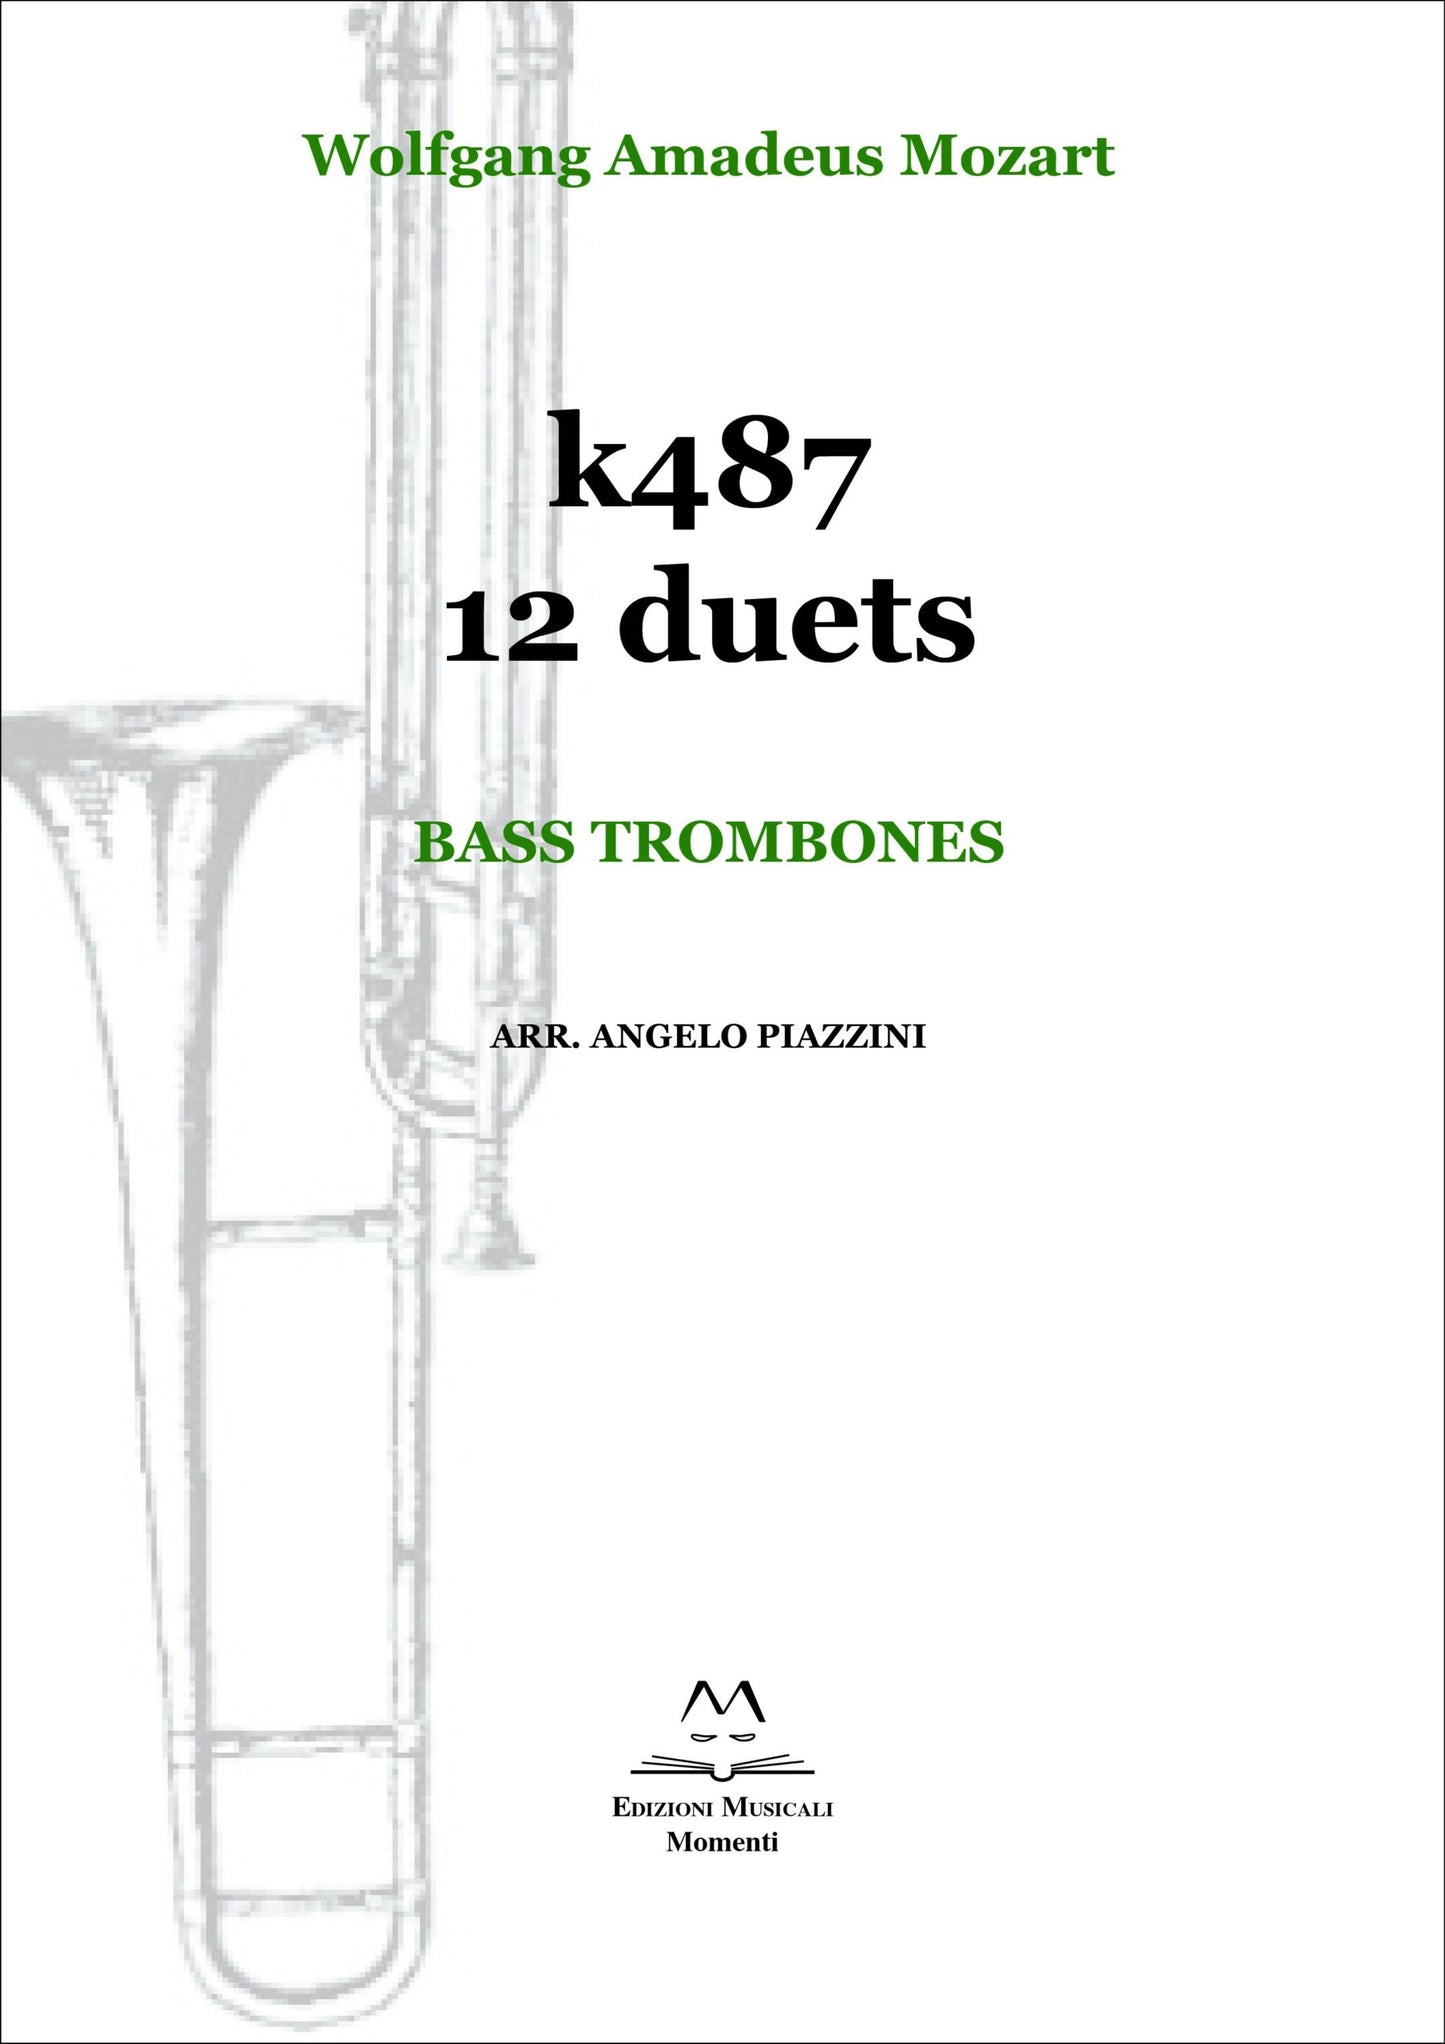 K487 12 duets. Bass trombones arr. Angelo Piazzini